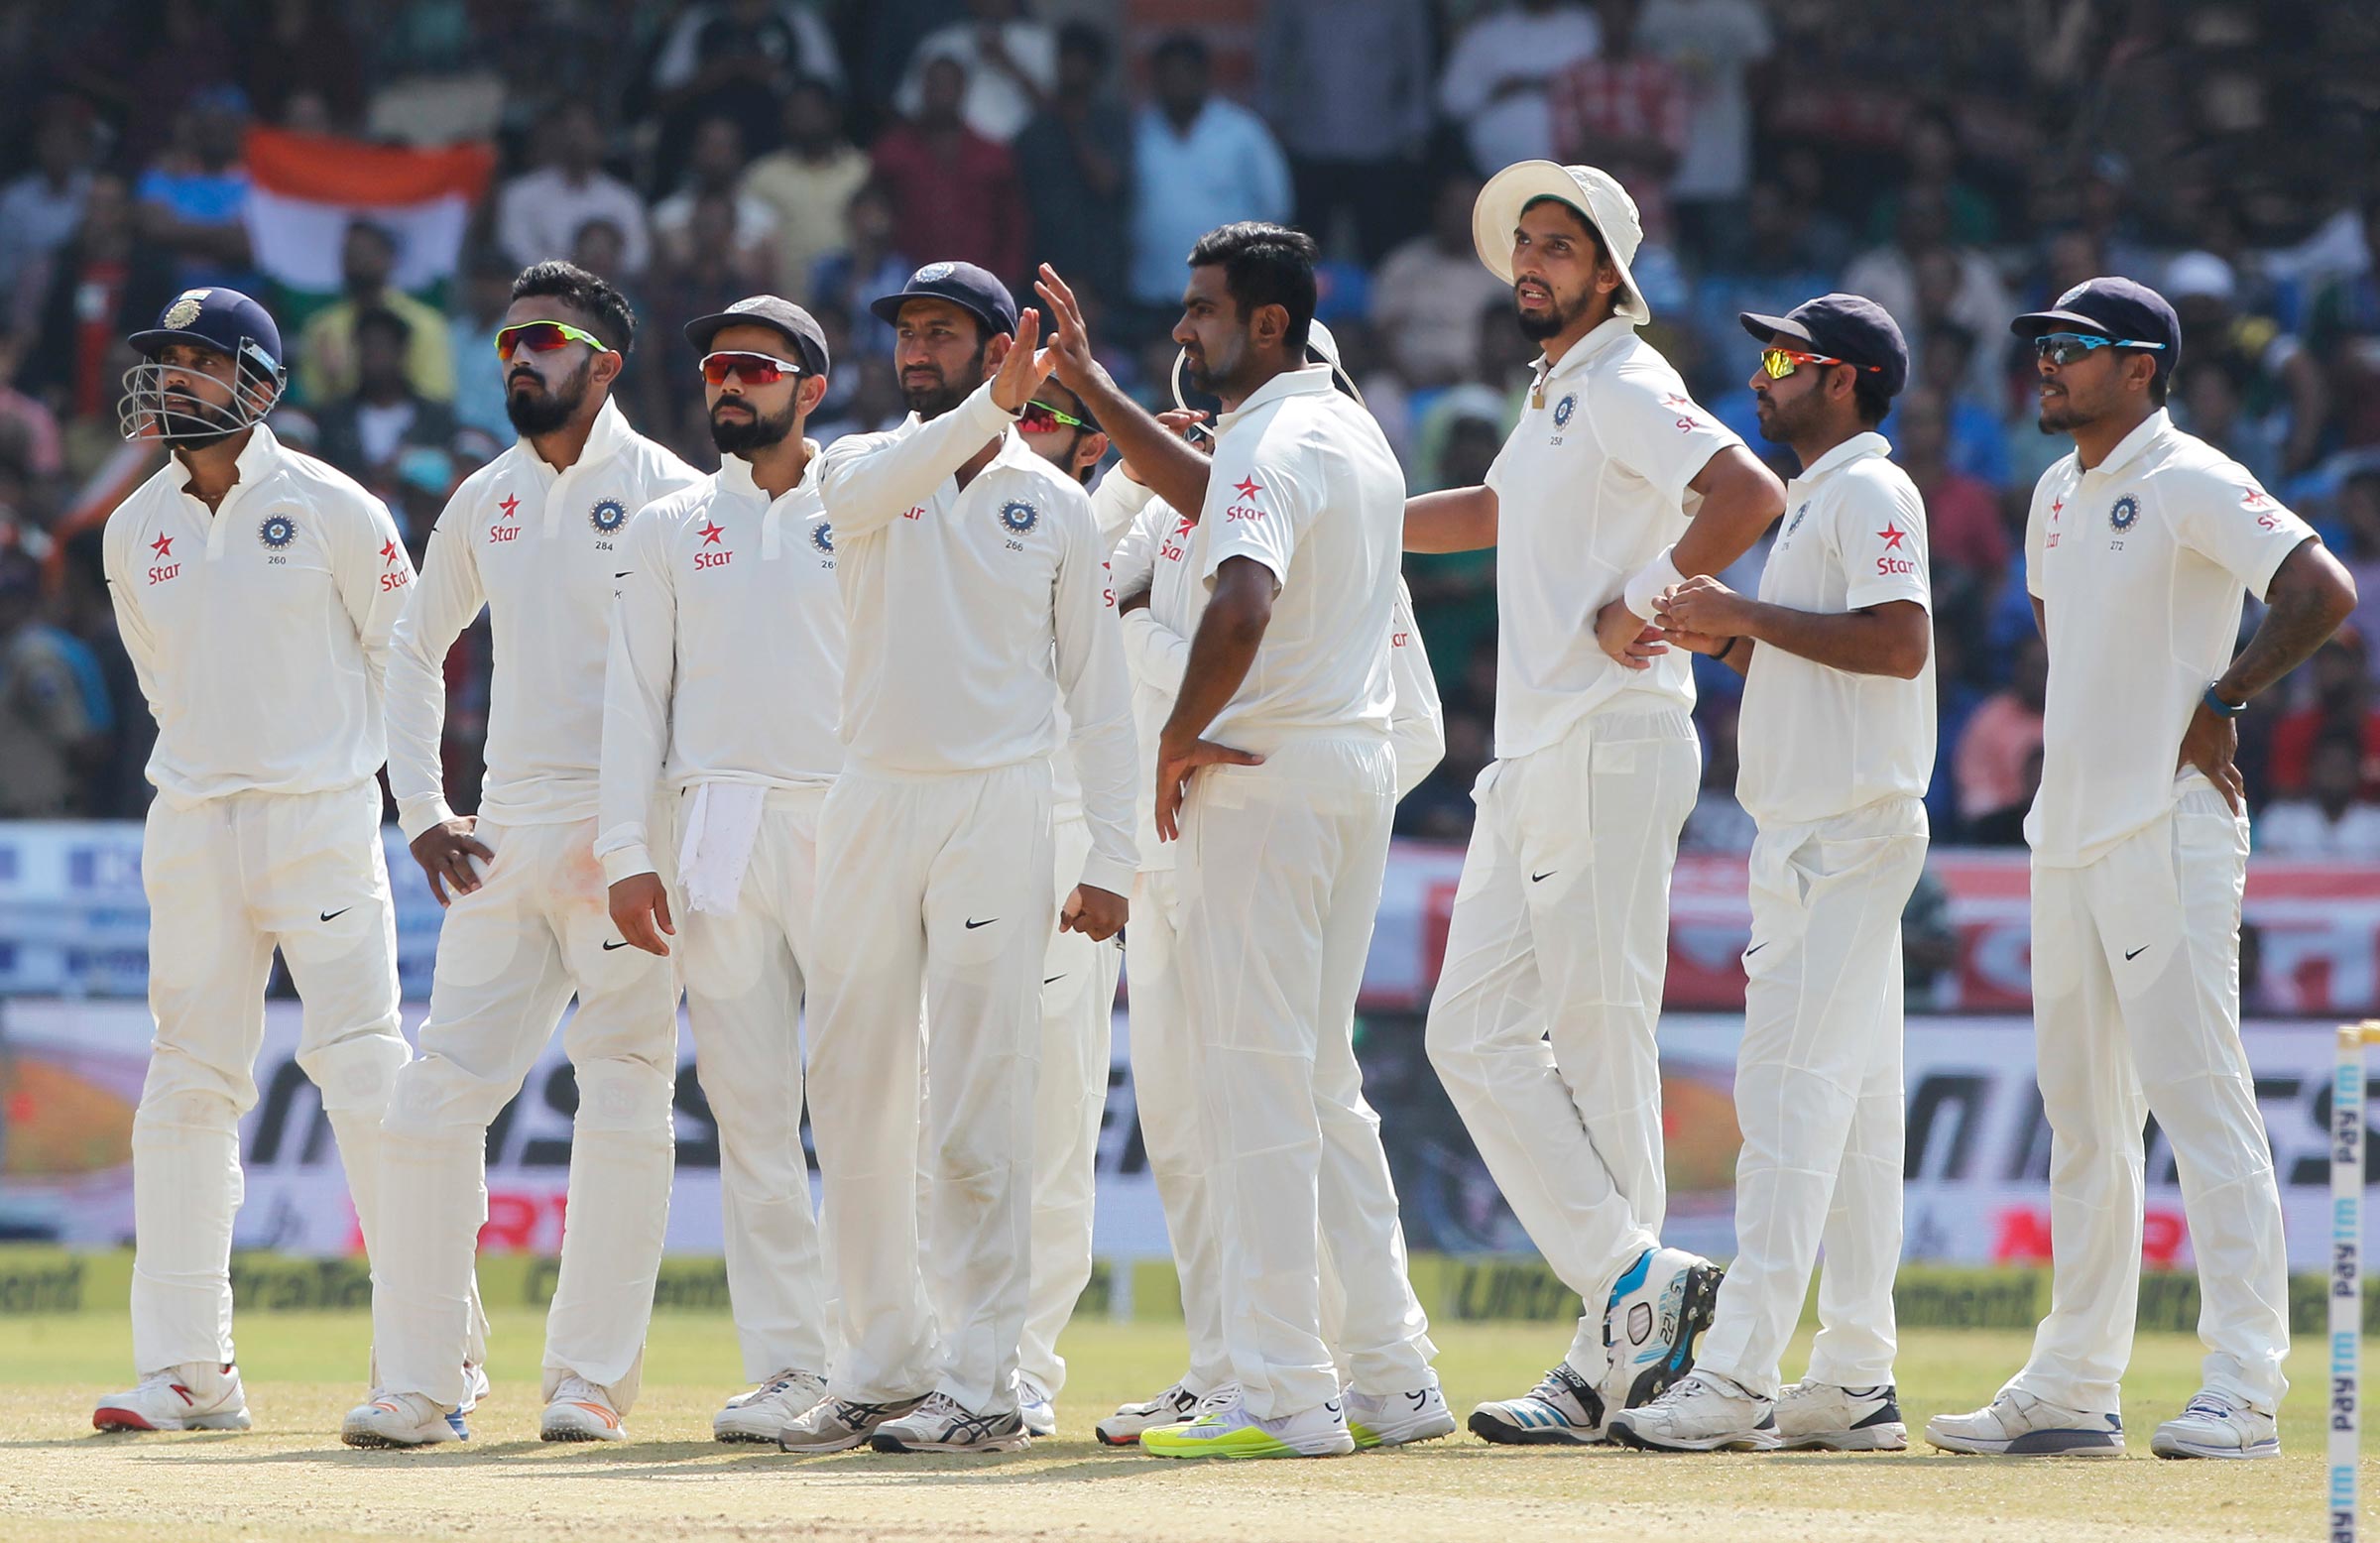 ভারত বনাম ইংল্যান্ড: যদি ১১জনকে বিরাট দেন প্রথম টেস্টে সুযোগ তাহলে টেস্ট জেতা নিশ্চিত